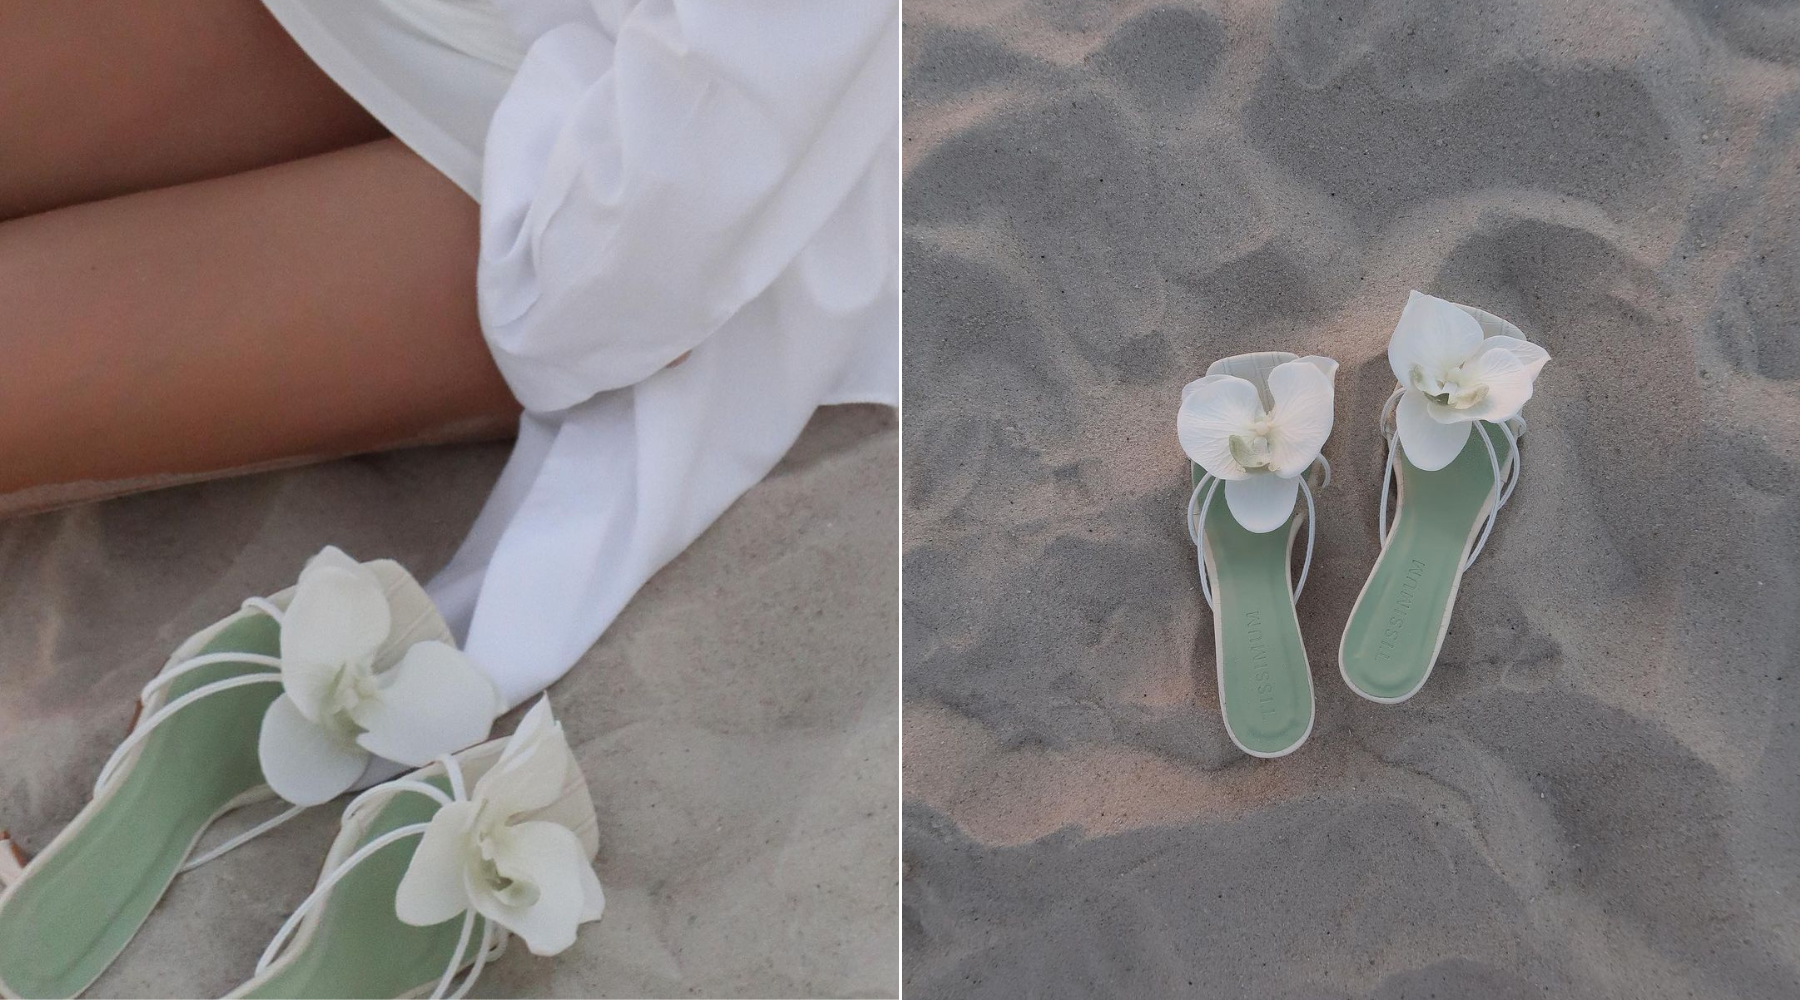 Predstavljamo vam DIY idejo za sandale z rožicami – tukaj namig, kako jih lahko naredite sami